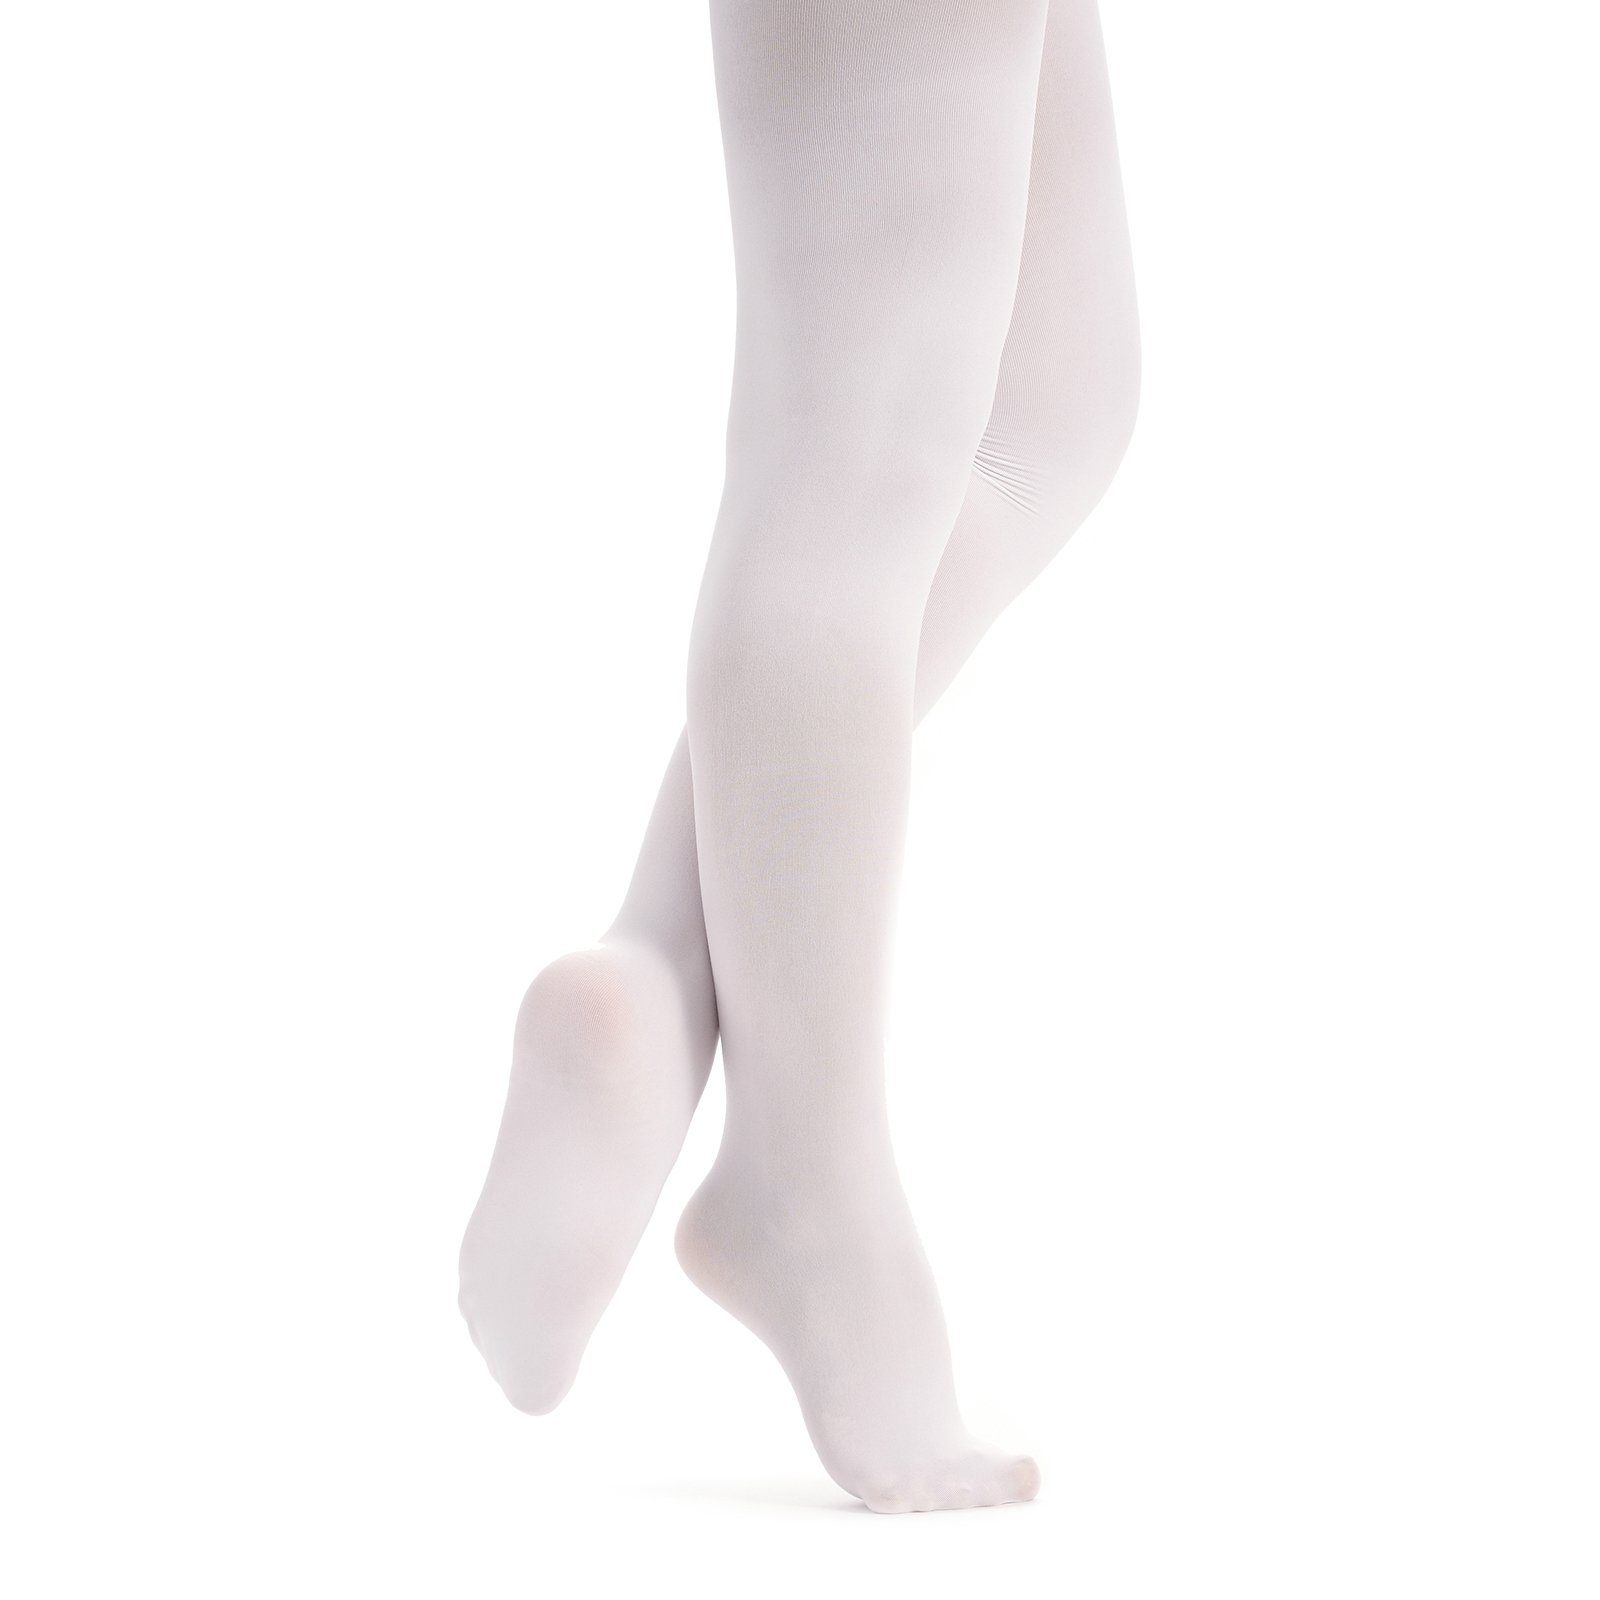 wunderbar strapazierfähig elastisch weich, Damen weiß Strumpfhose Kira tanzmuster und Ballettstrumpfhose mit Fuß